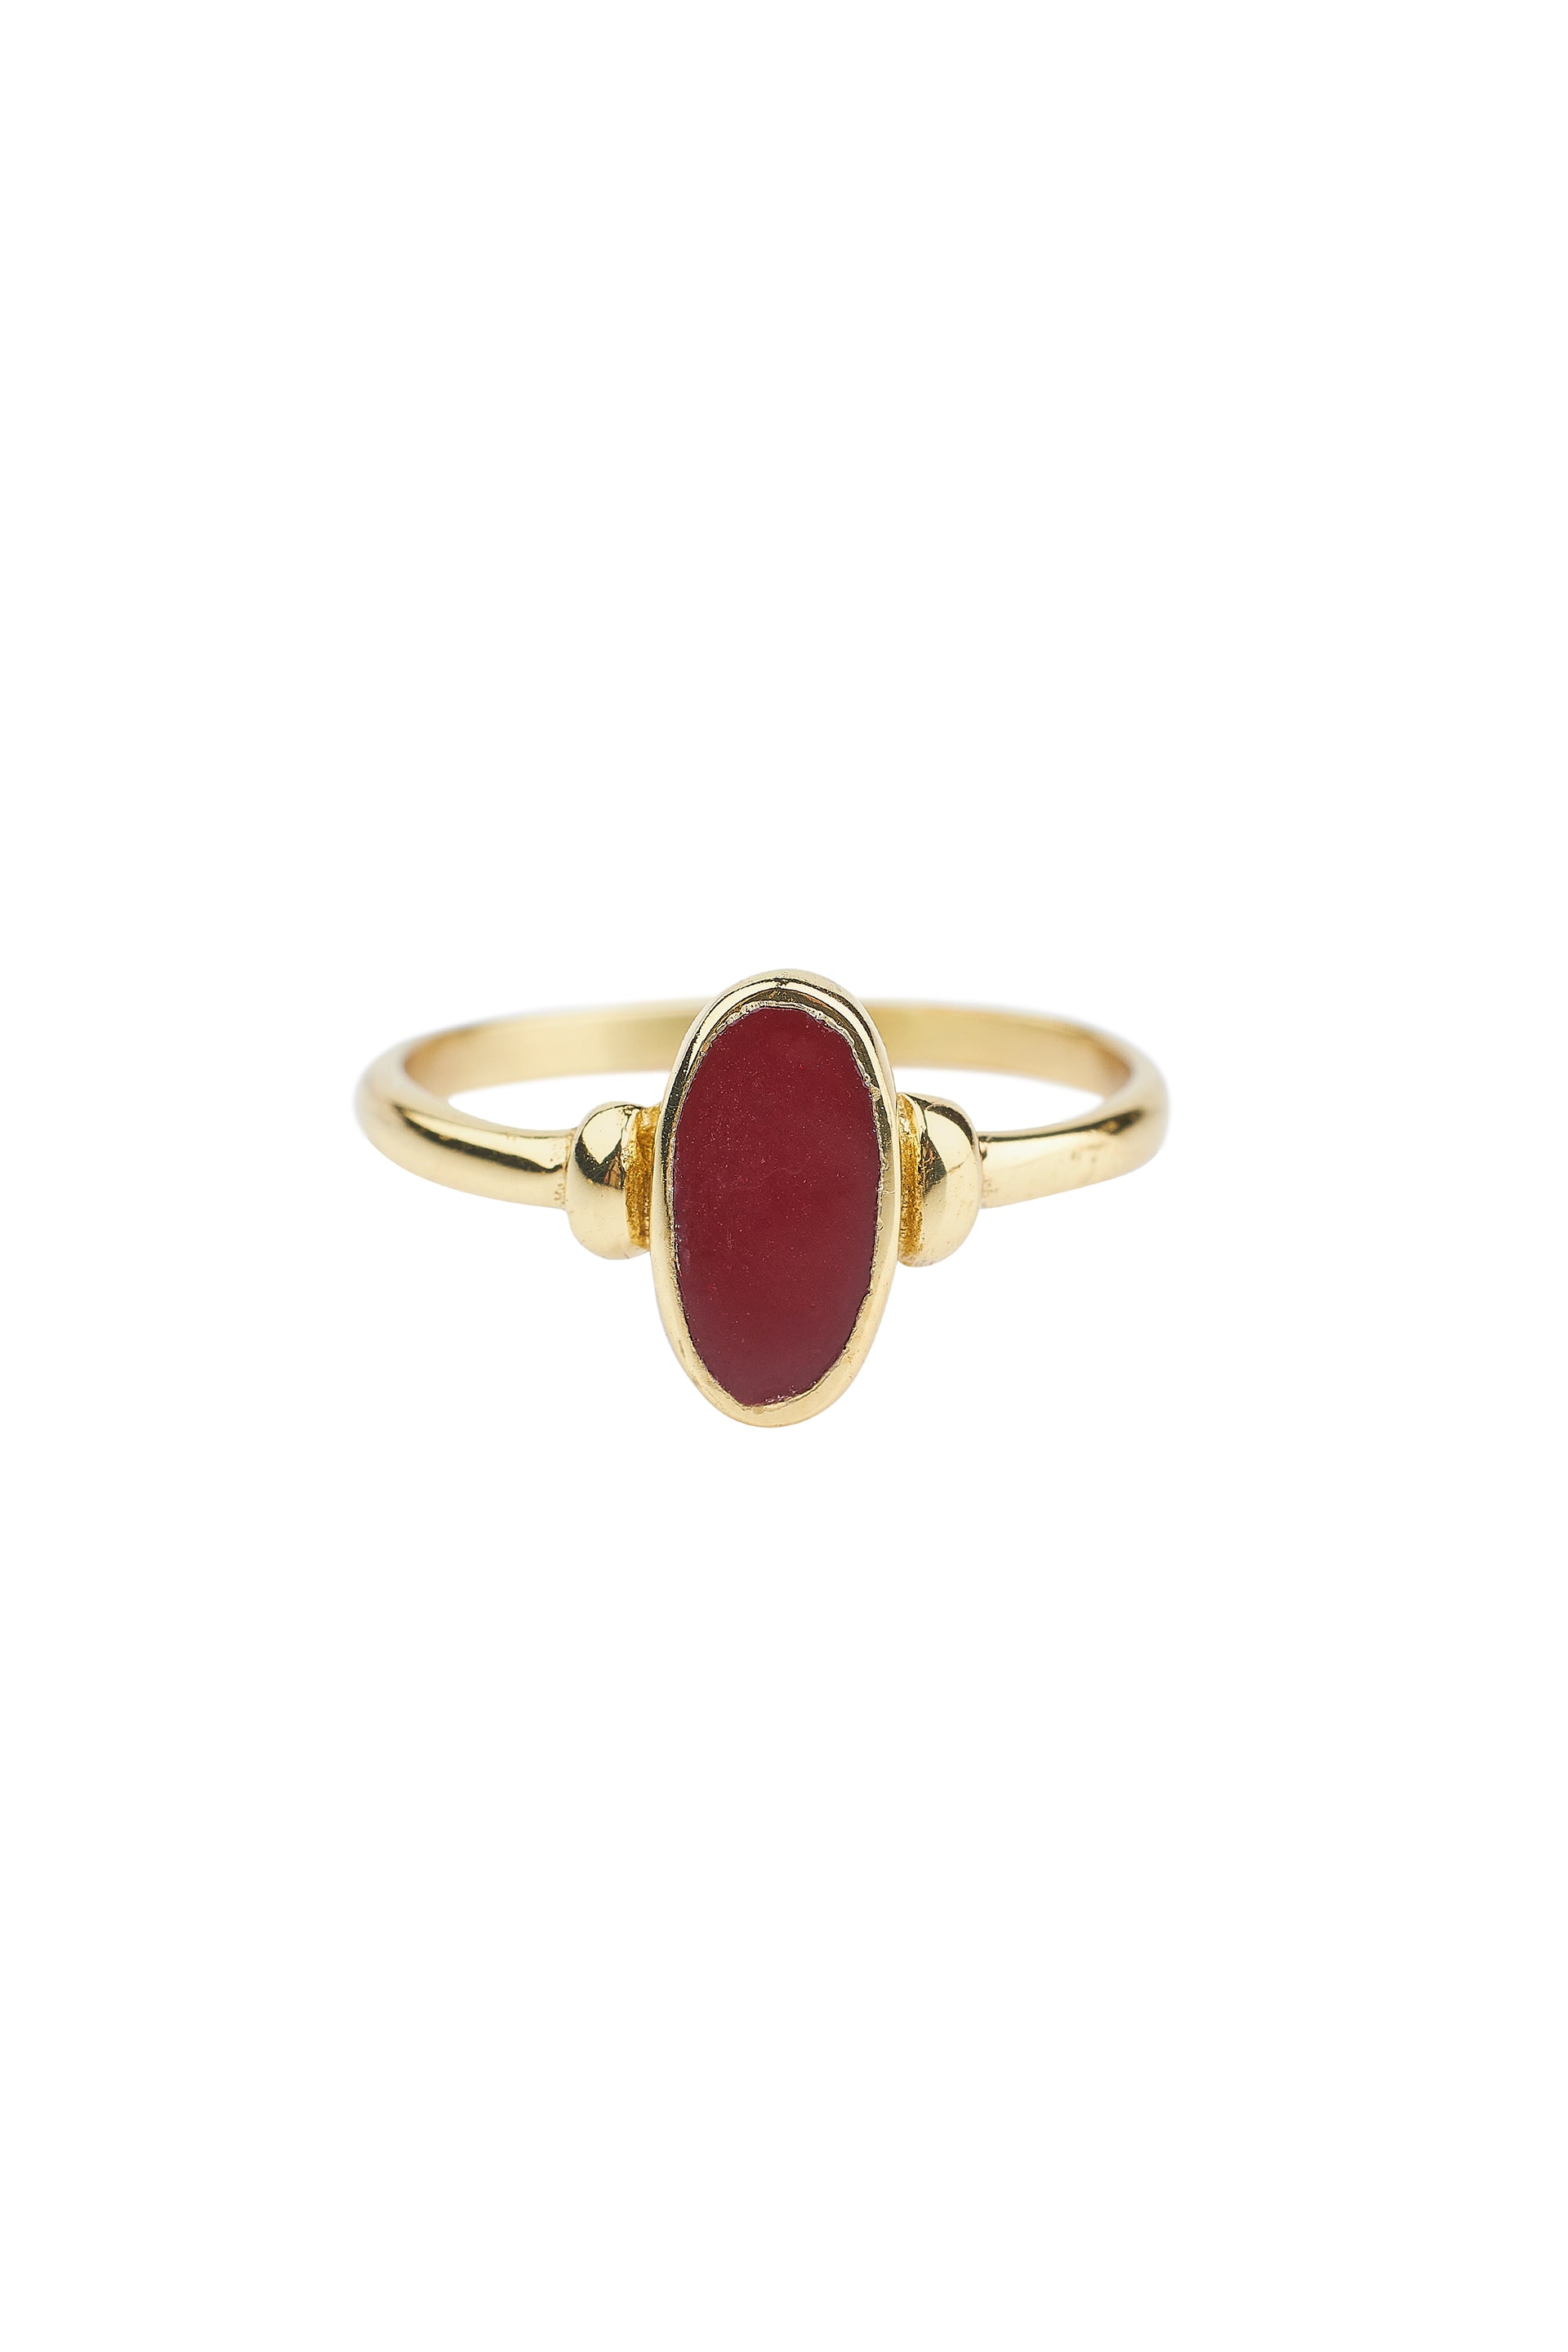 Brass oval dark red resin ring